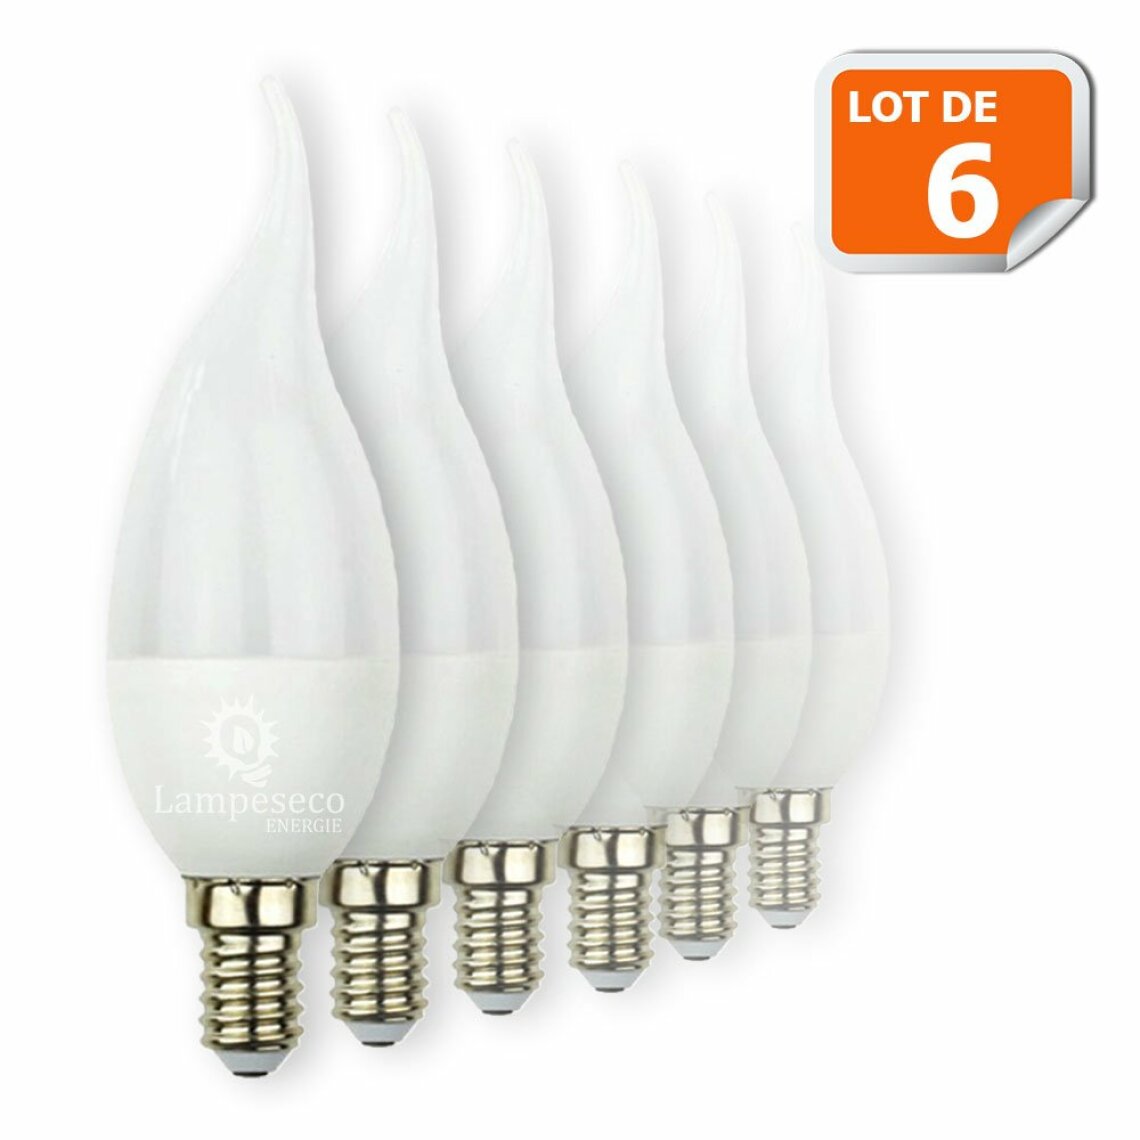 Lampesecoenergie - Lot de 6 Ampoules LED E14 Flamme 5W Eq 40W Blanc Chaud - Ampoules LED